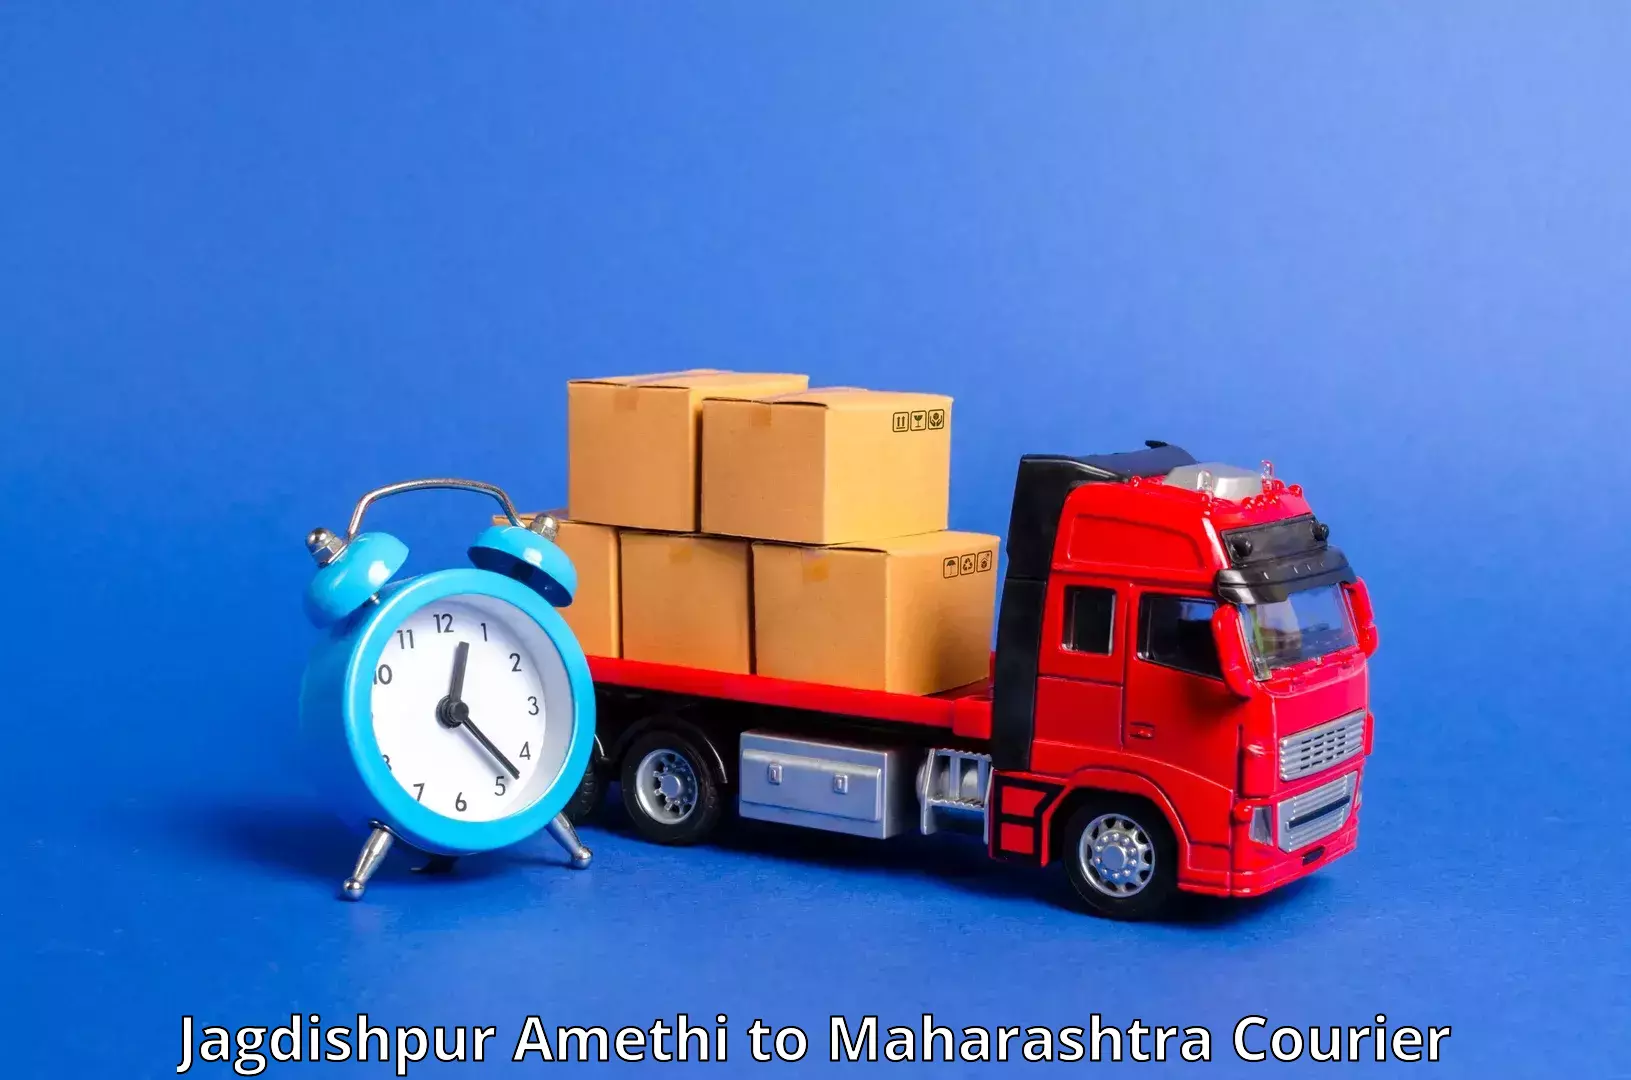 Comprehensive delivery network Jagdishpur Amethi to Walchandnagar